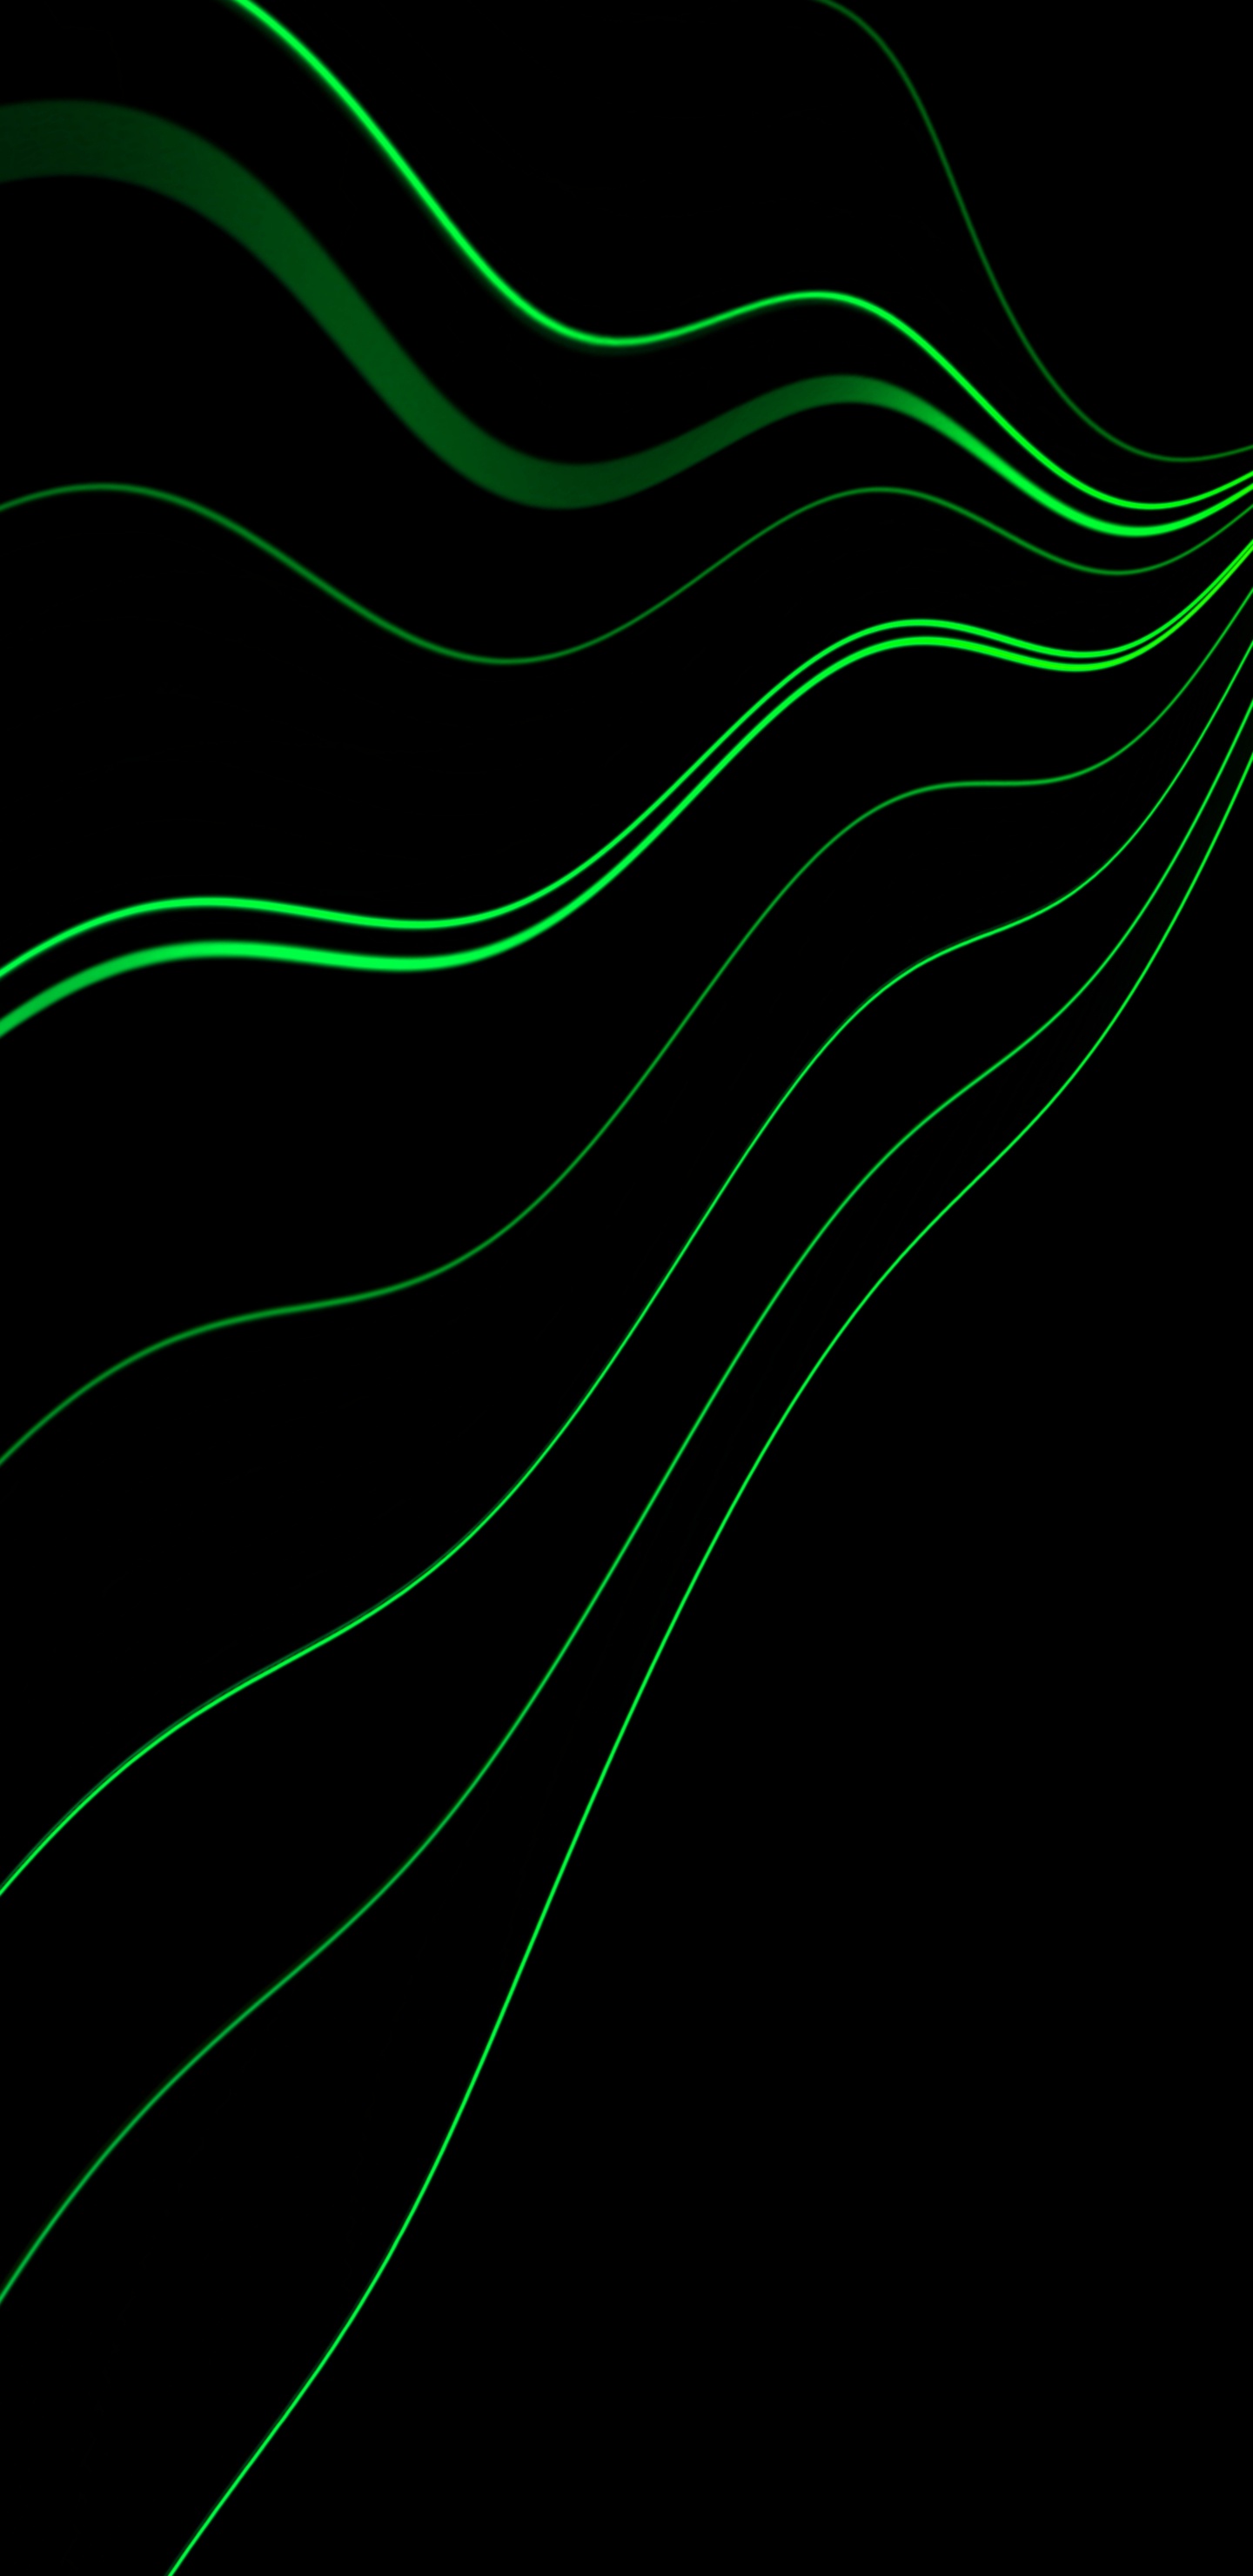 Grüne Und Weiße Linie Abbildung. Wallpaper in 1440x2960 Resolution